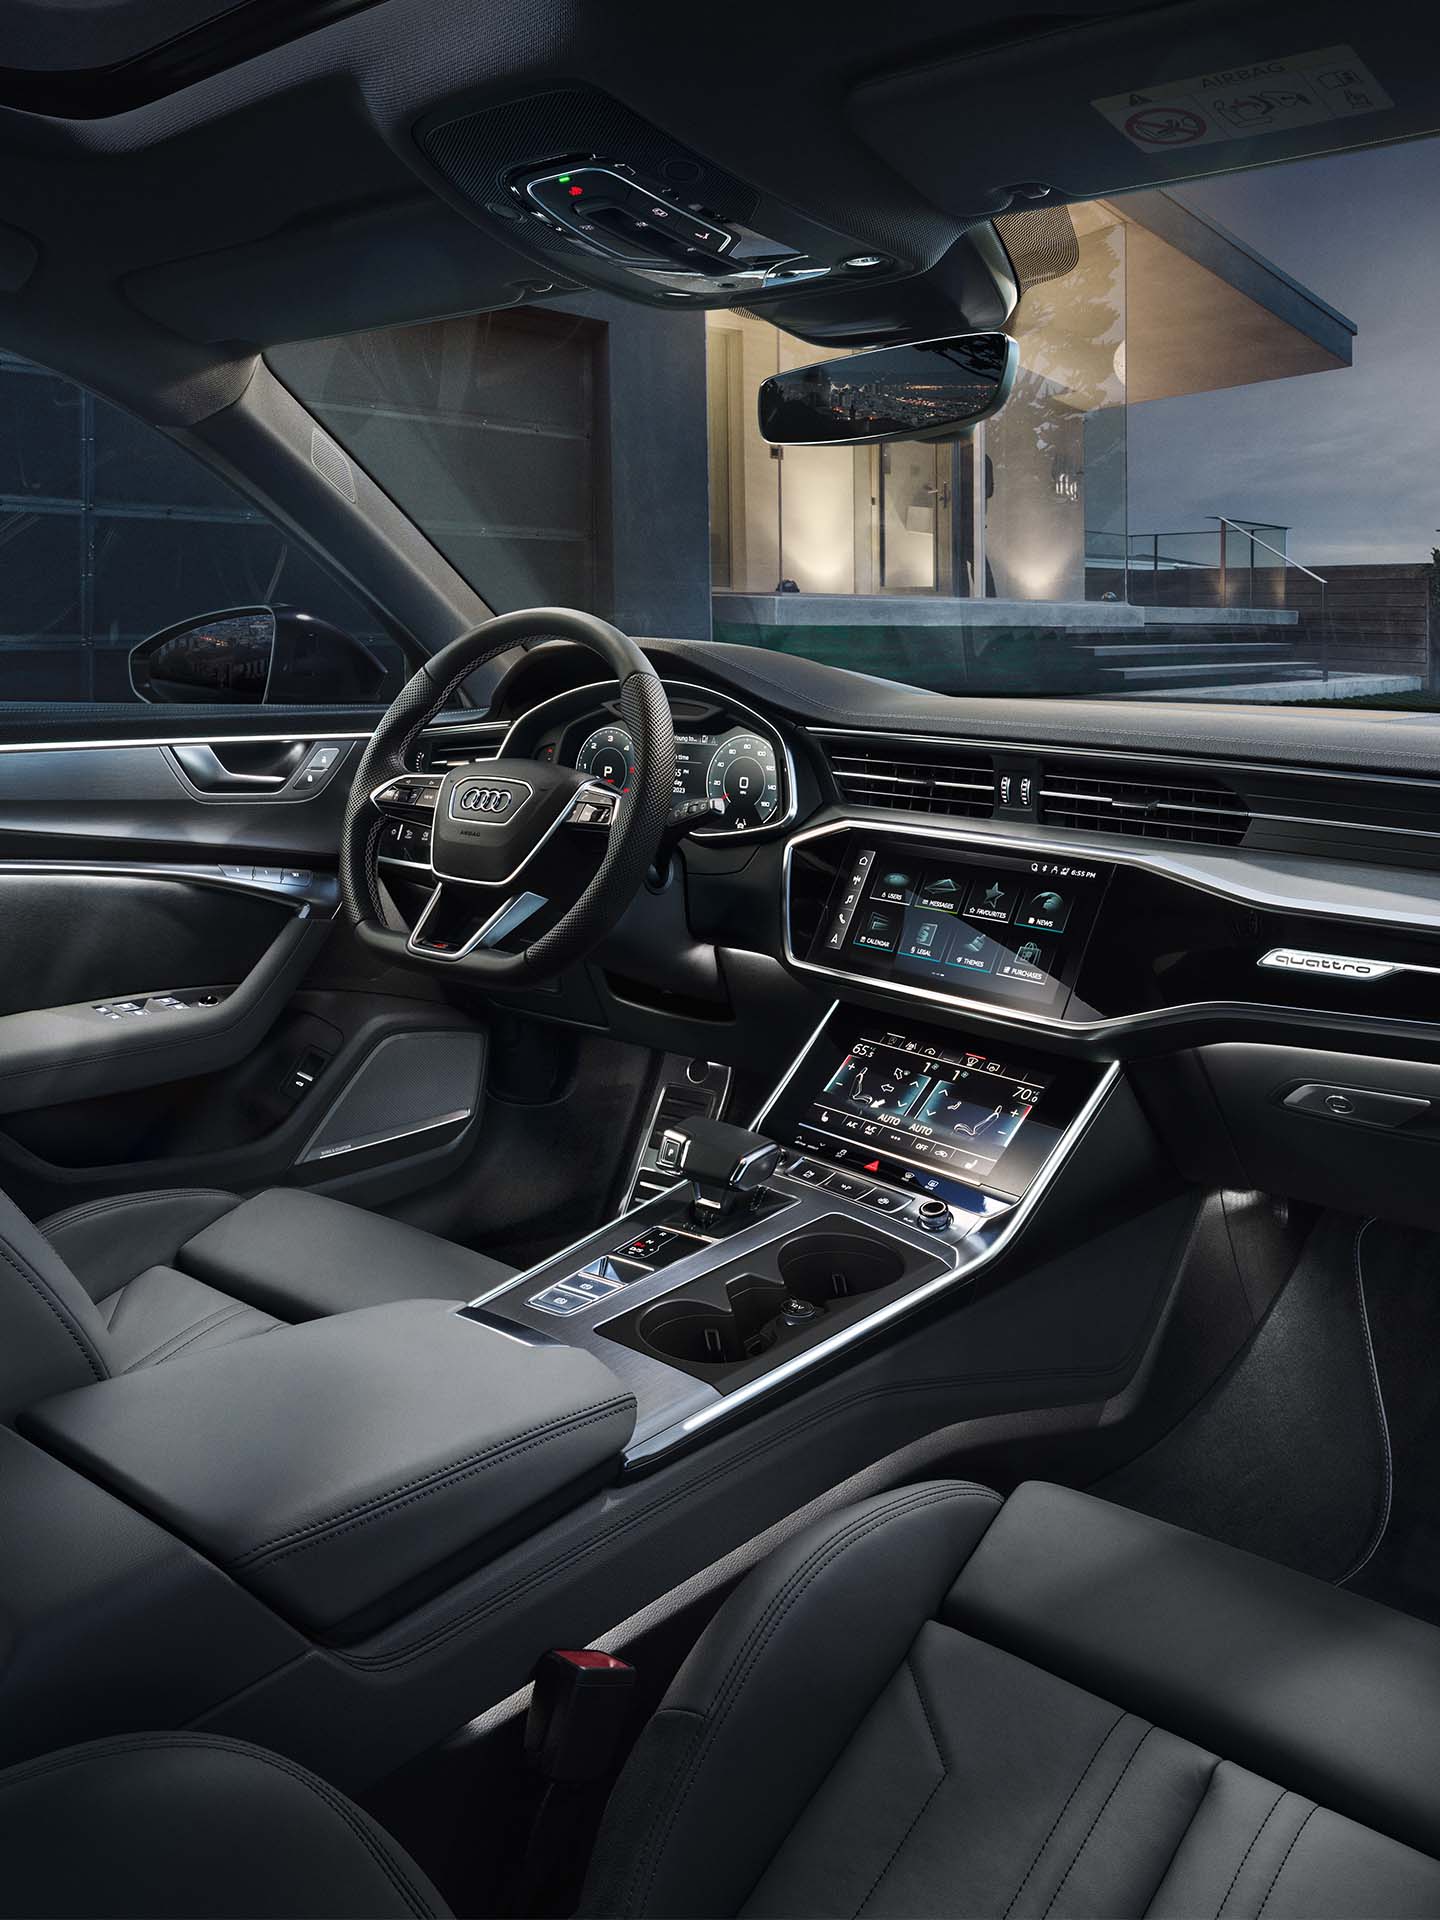 Thèmes lumineux Audi dans une vue de cockpit